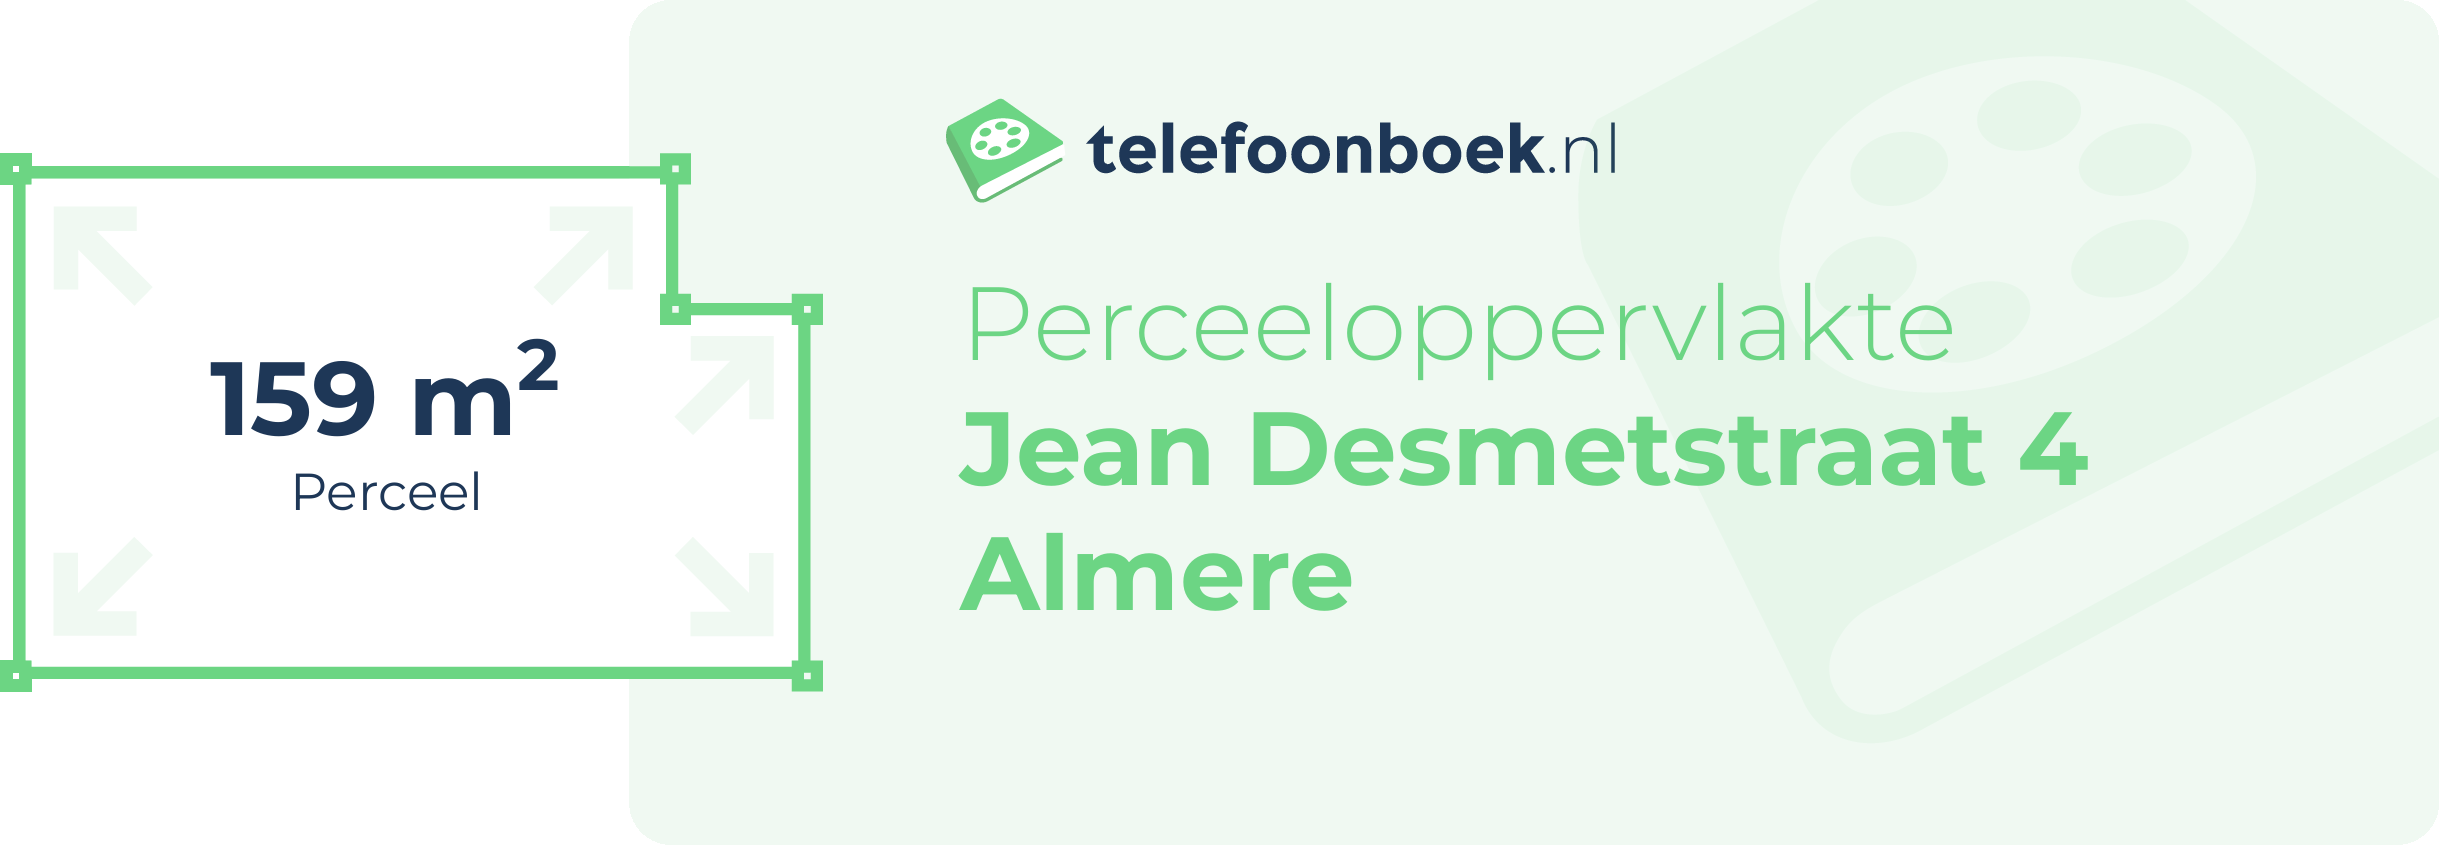 Perceeloppervlakte Jean Desmetstraat 4 Almere